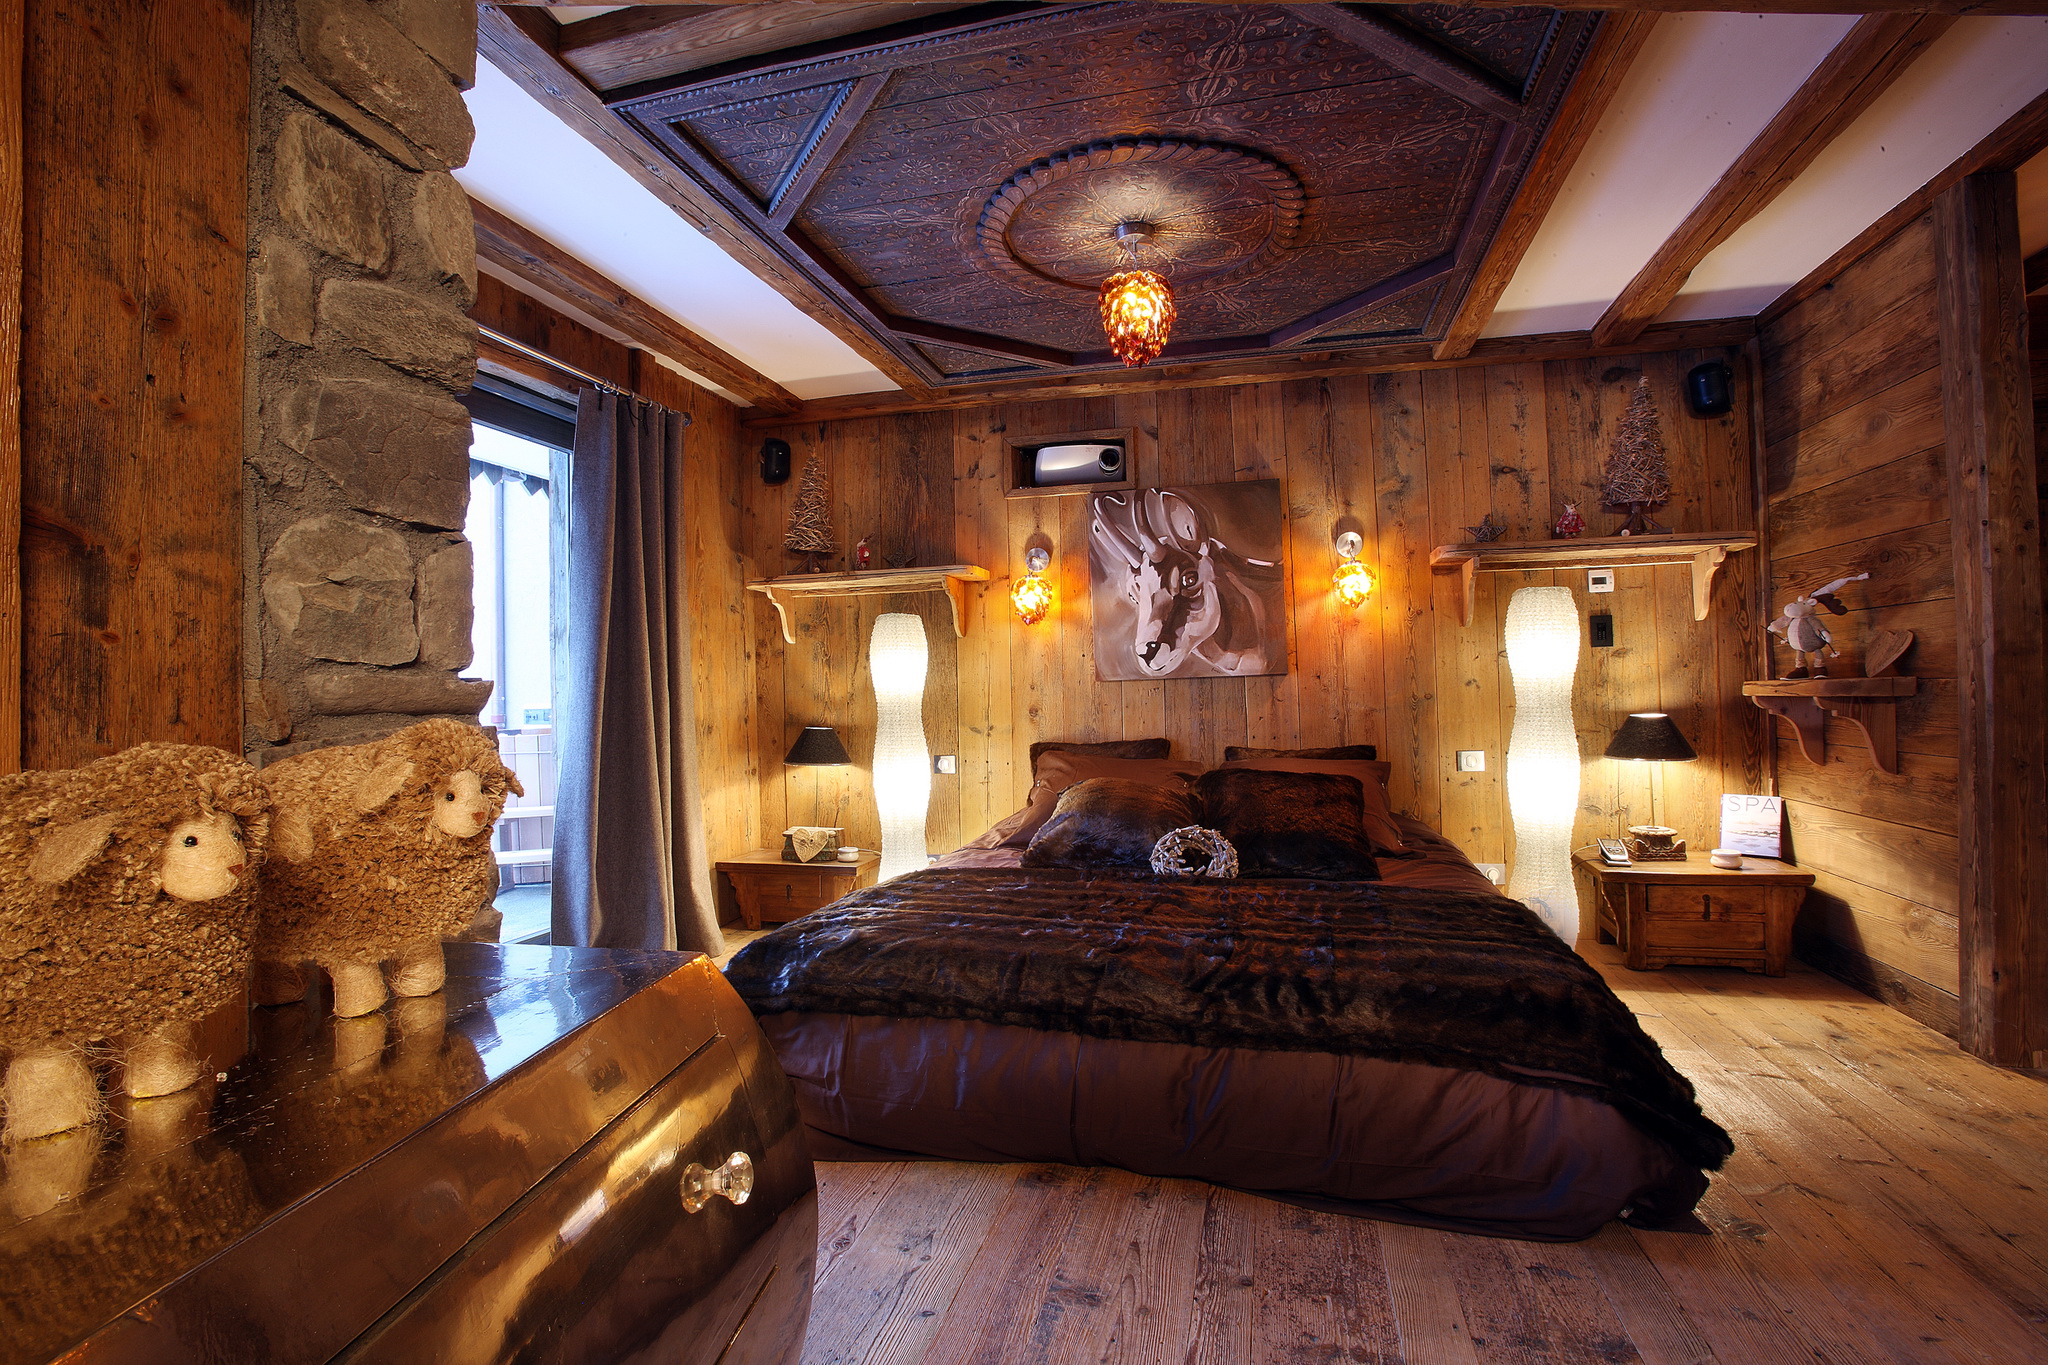 Отделка комнаты деревом. Австрийское Шале интерьер. Альпийское Шале интерьер. Спальня в стиле Шале. Комната в деревянном стиле.